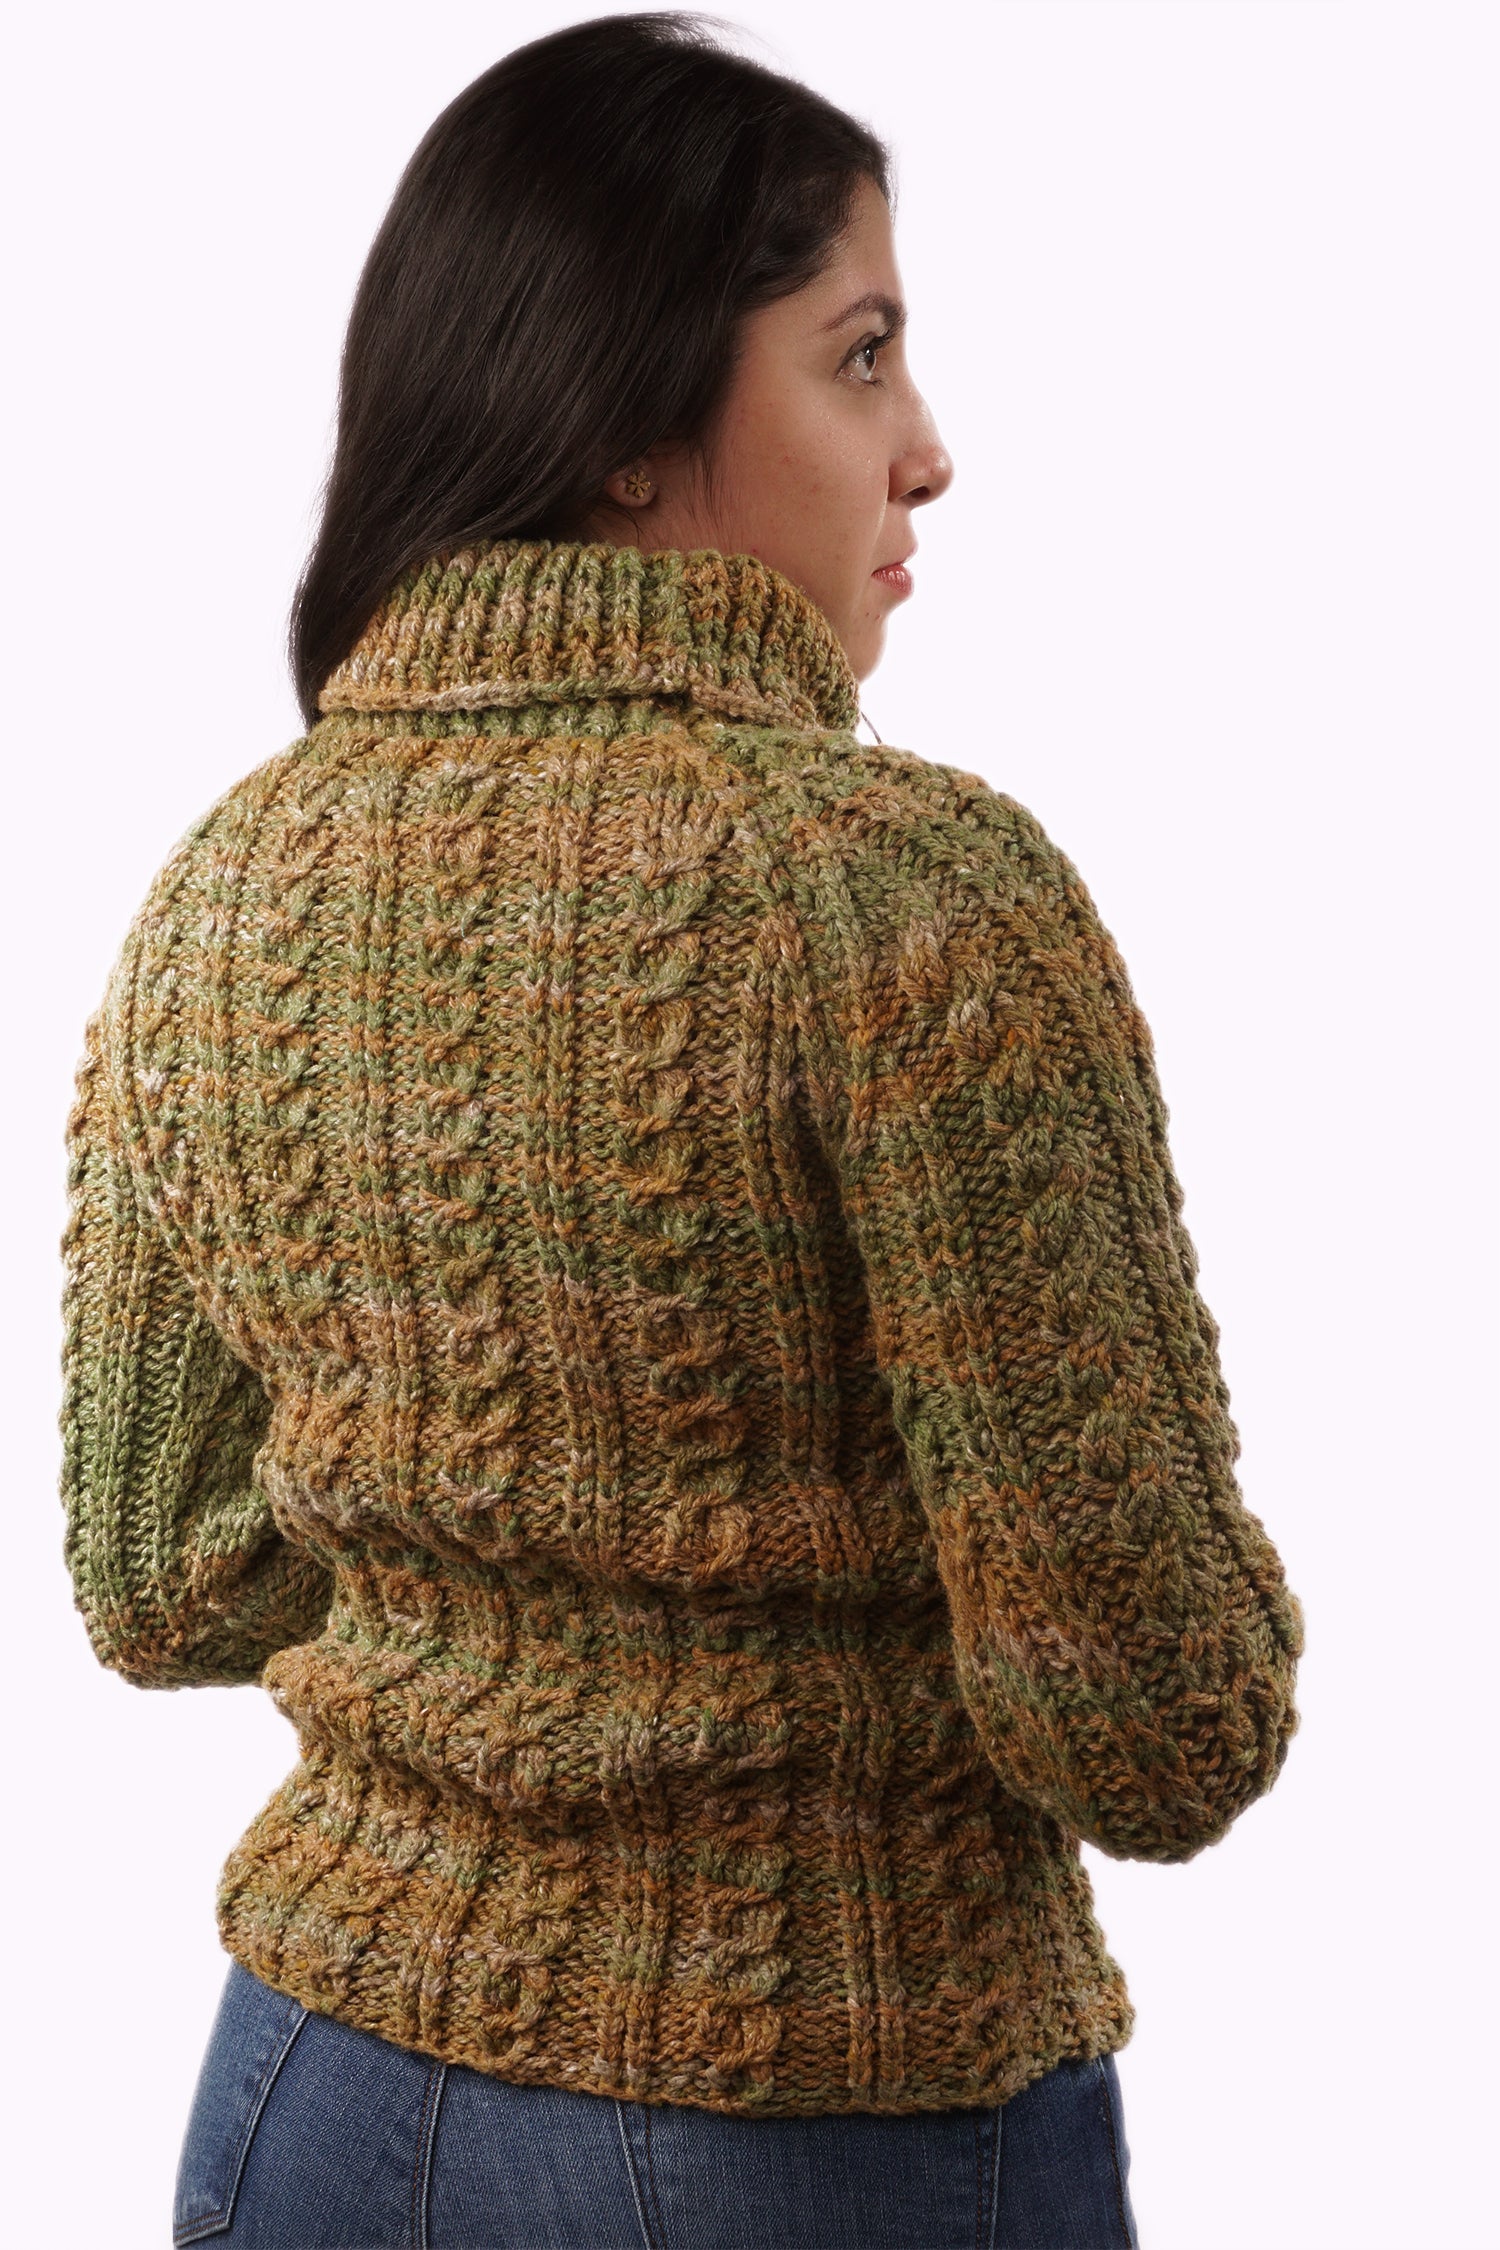 Patucos de lana adulto unisex artesanal color marrón para regalo.